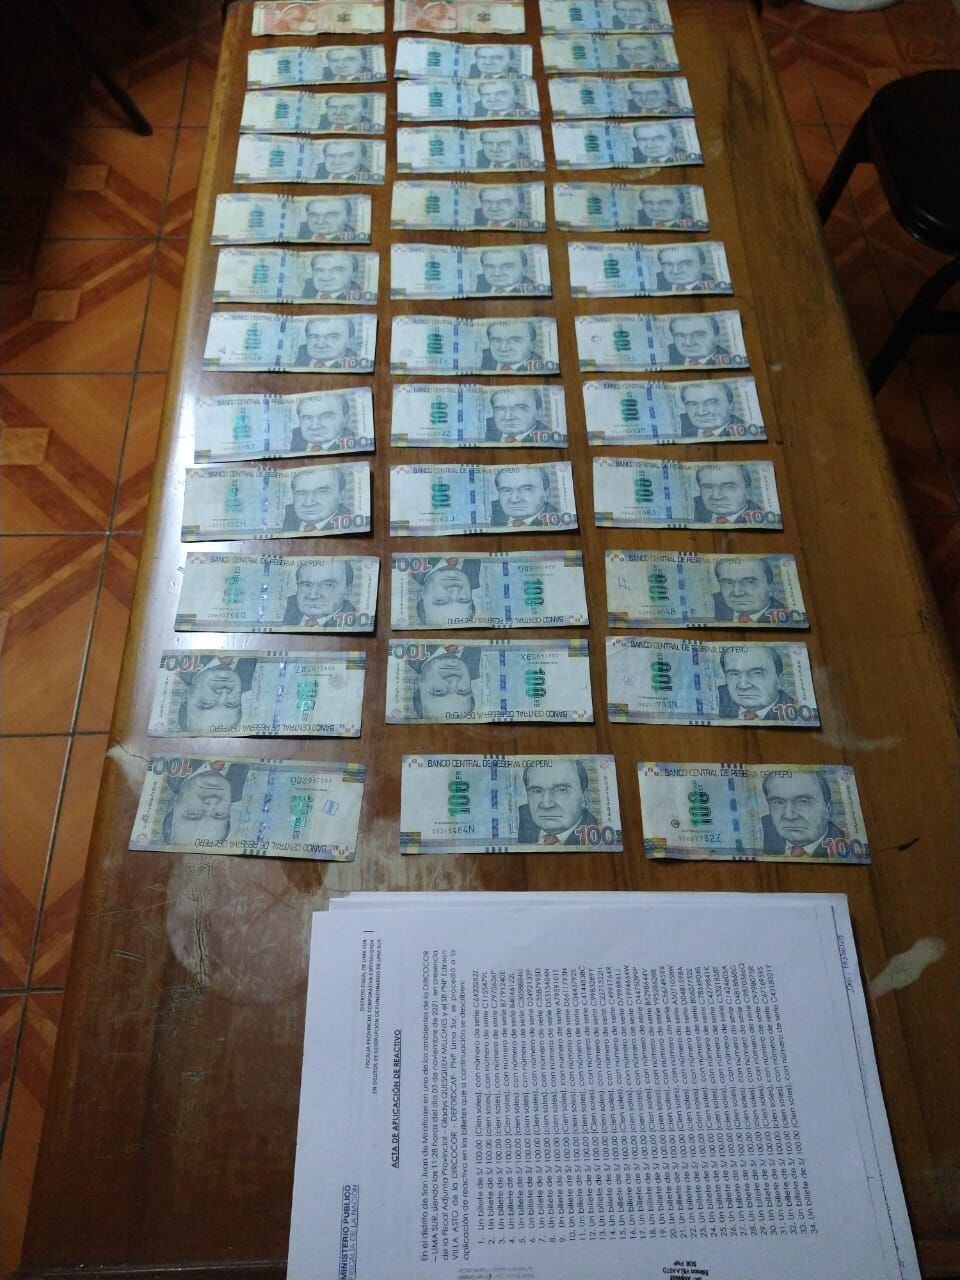 Bustamante habría solicitado la suma de 3.500 soles para dar trámite inmediato al pago de venta de toldos armables para el municipio de Pucusana, por lo cual se produjo su captura.